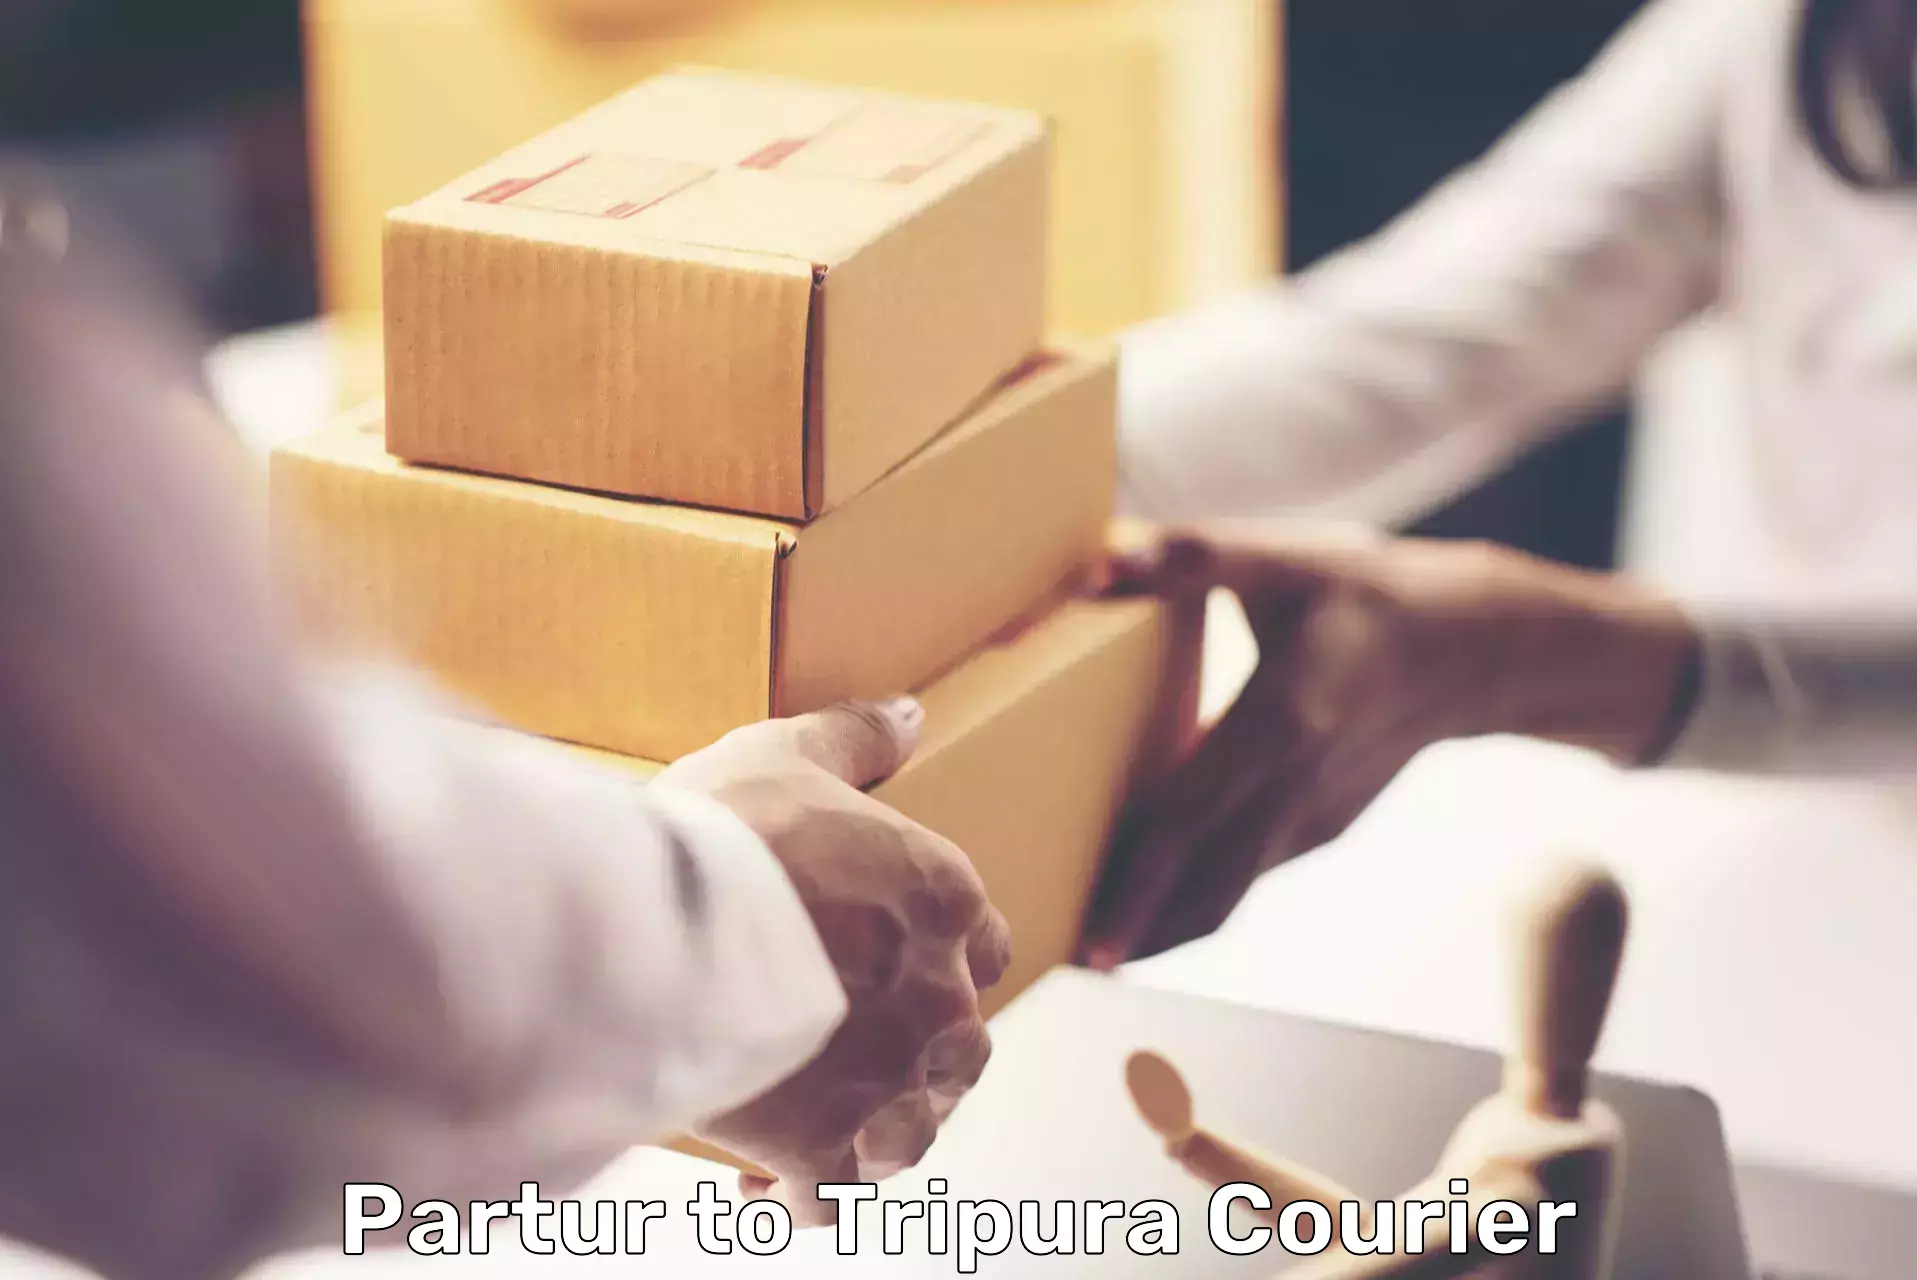 Heavy parcel delivery Partur to Dharmanagar